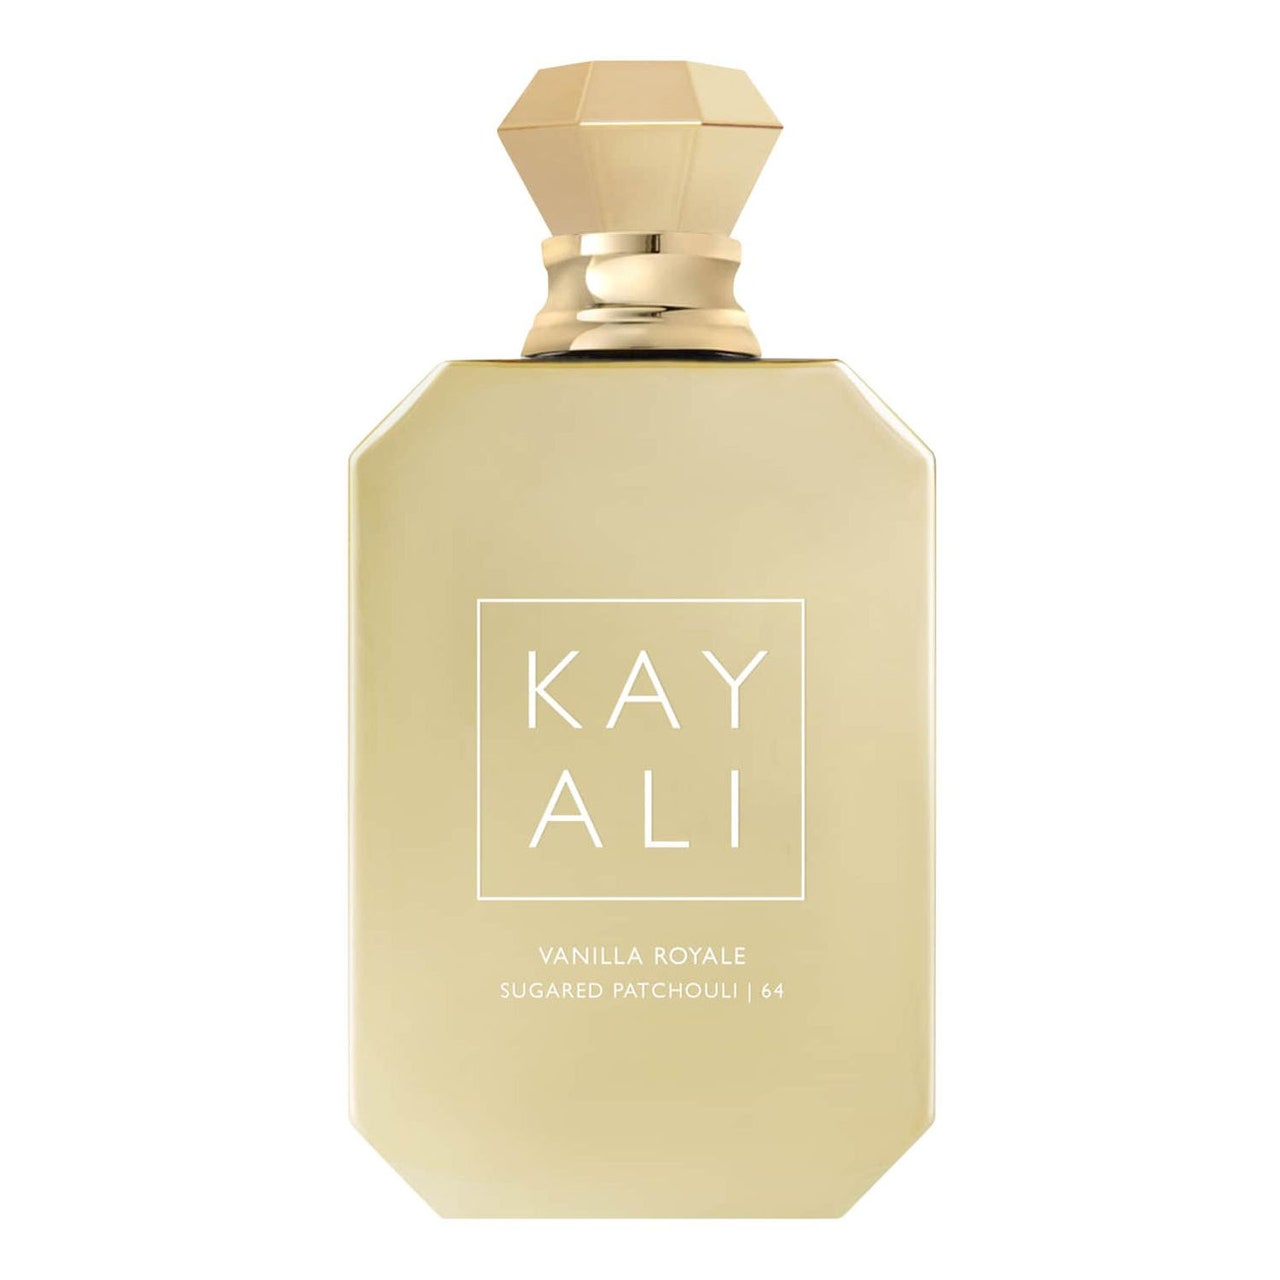 Kayali Vanilla Royale goldene Parfümflasche auf weißem Hintergrund